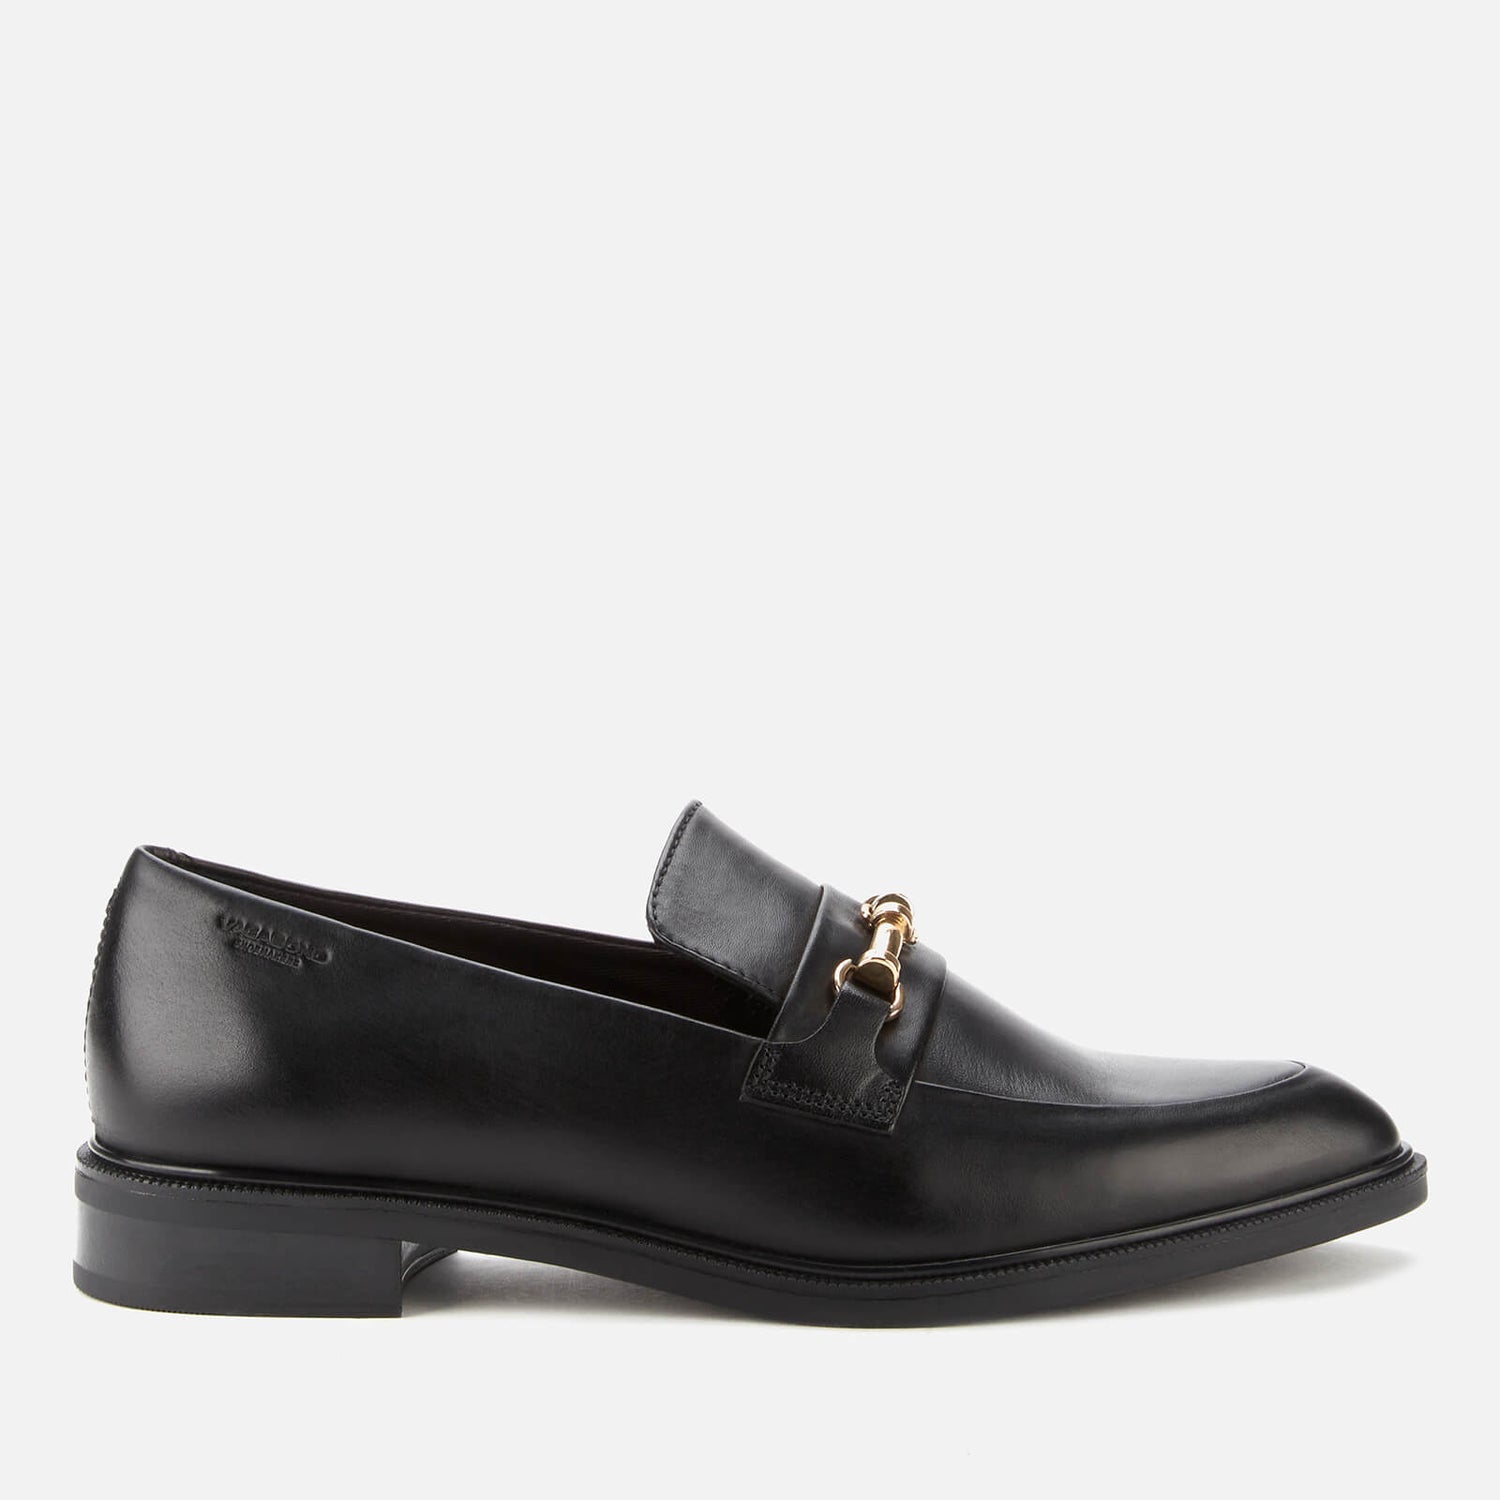 Vagabond Women's Frances Leather Loafers - Black